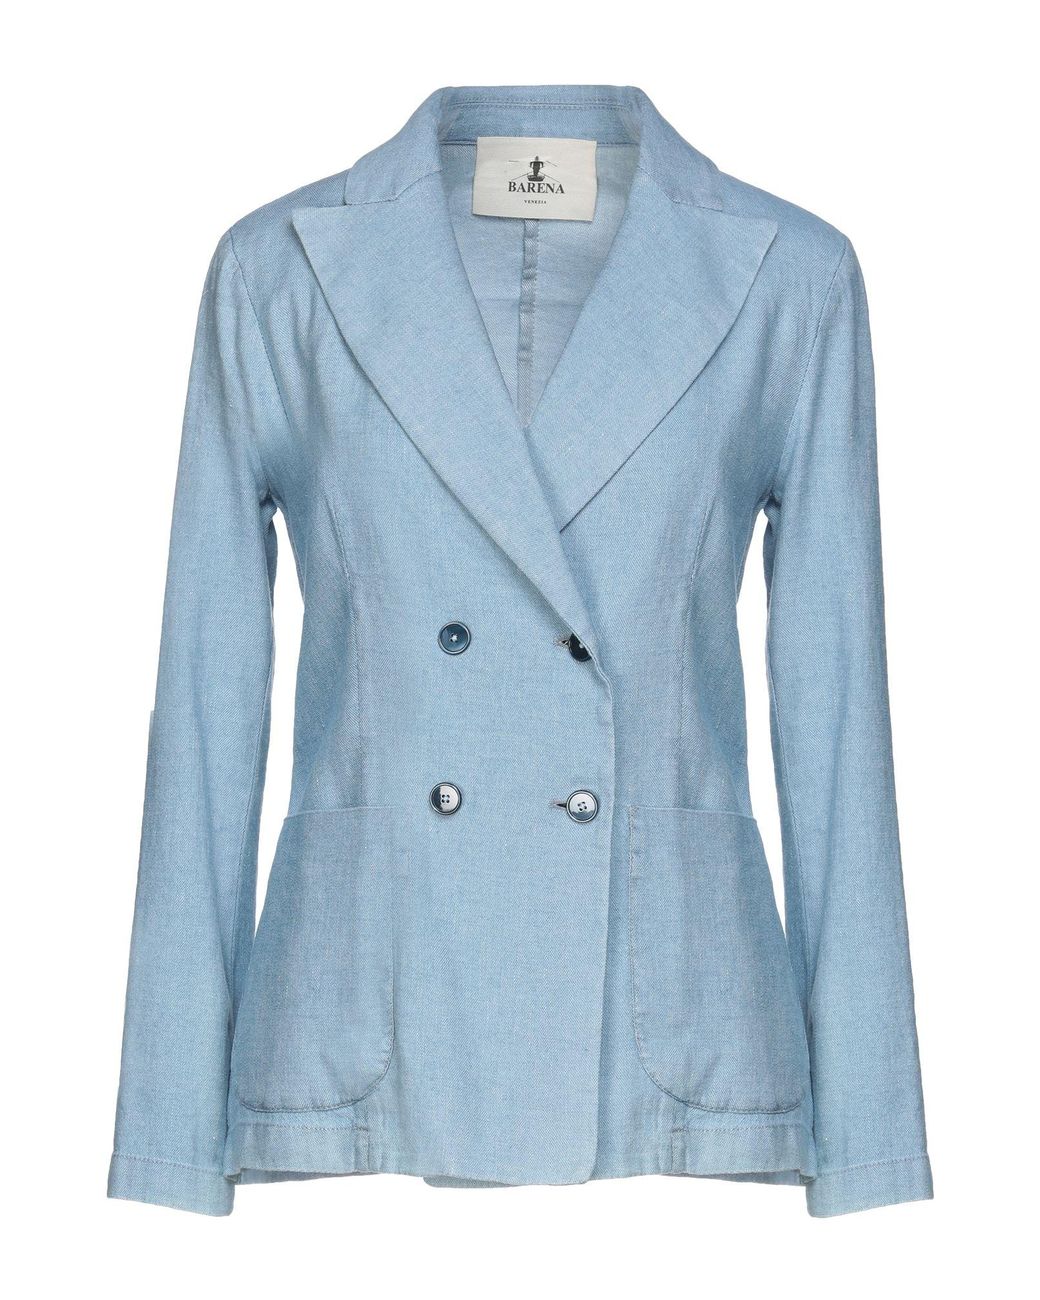 Barena Denim Suit Jacket in Sky Blue (Blue) - Lyst